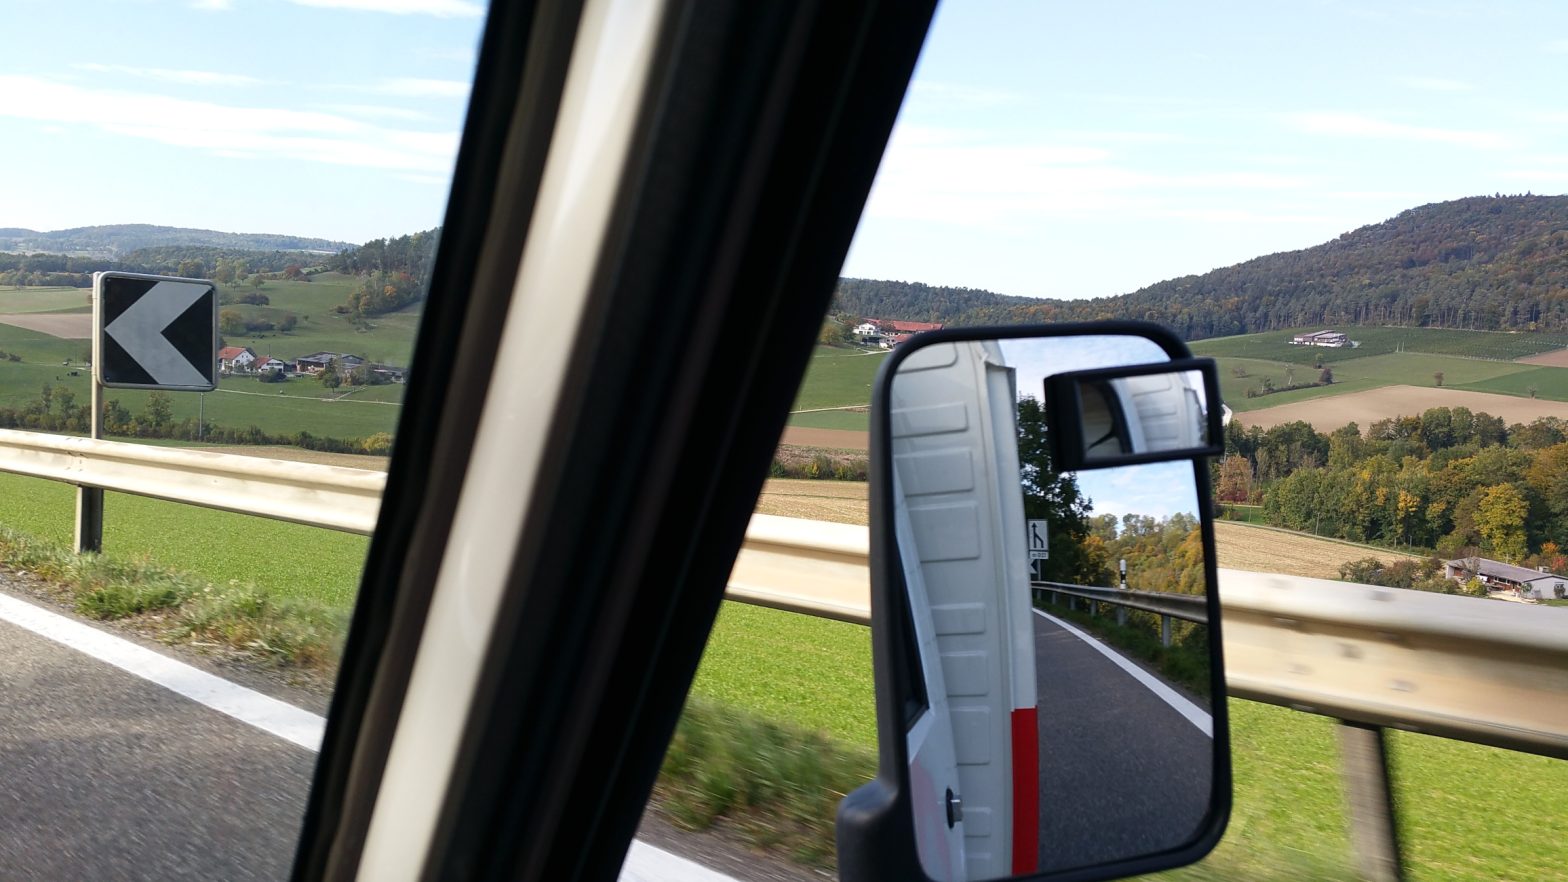 Landschaft Schweiz aus Fahrzeug zentral der Rückspiegel in dem sich ein Schild spiegelt